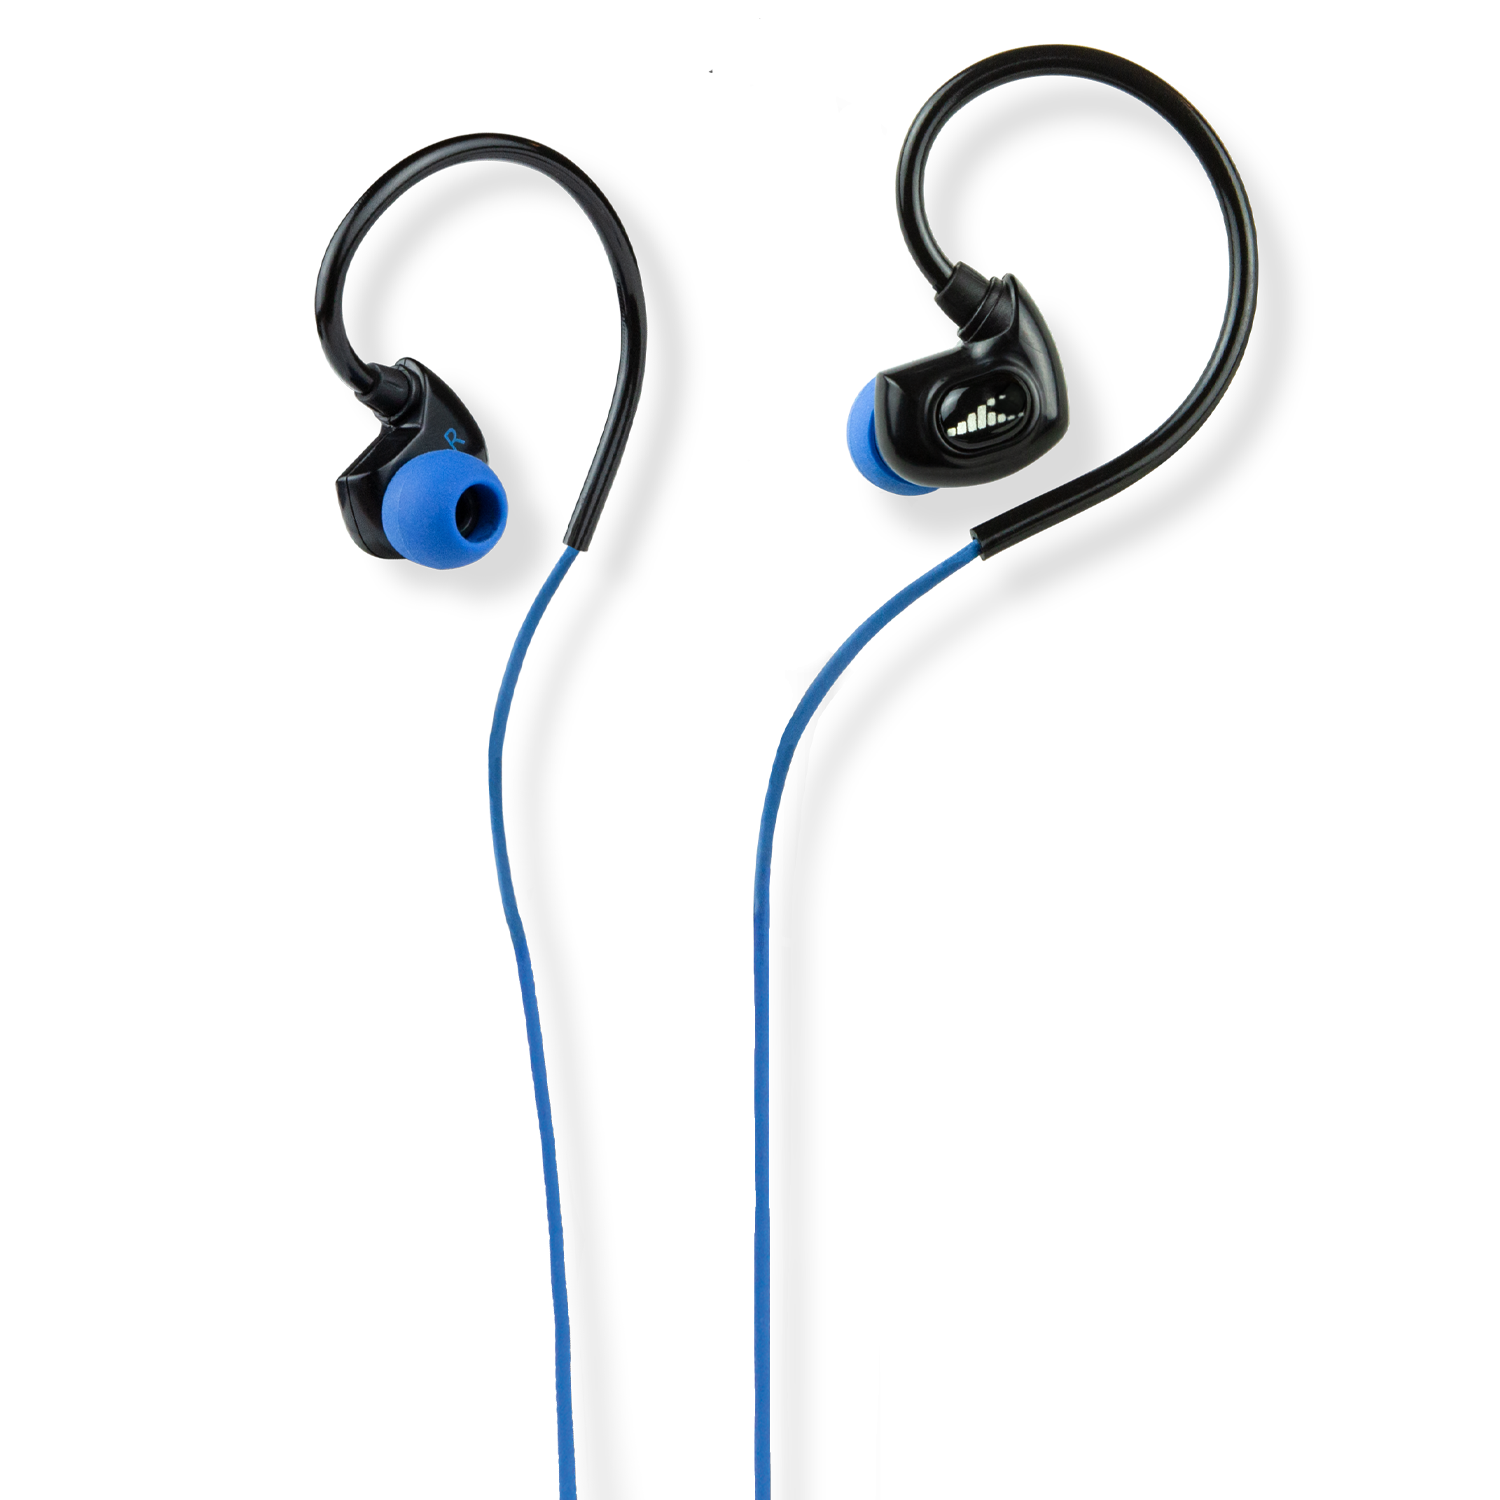 SURGE SX10-N Waterproof Sport Headphones (Normal Cord)